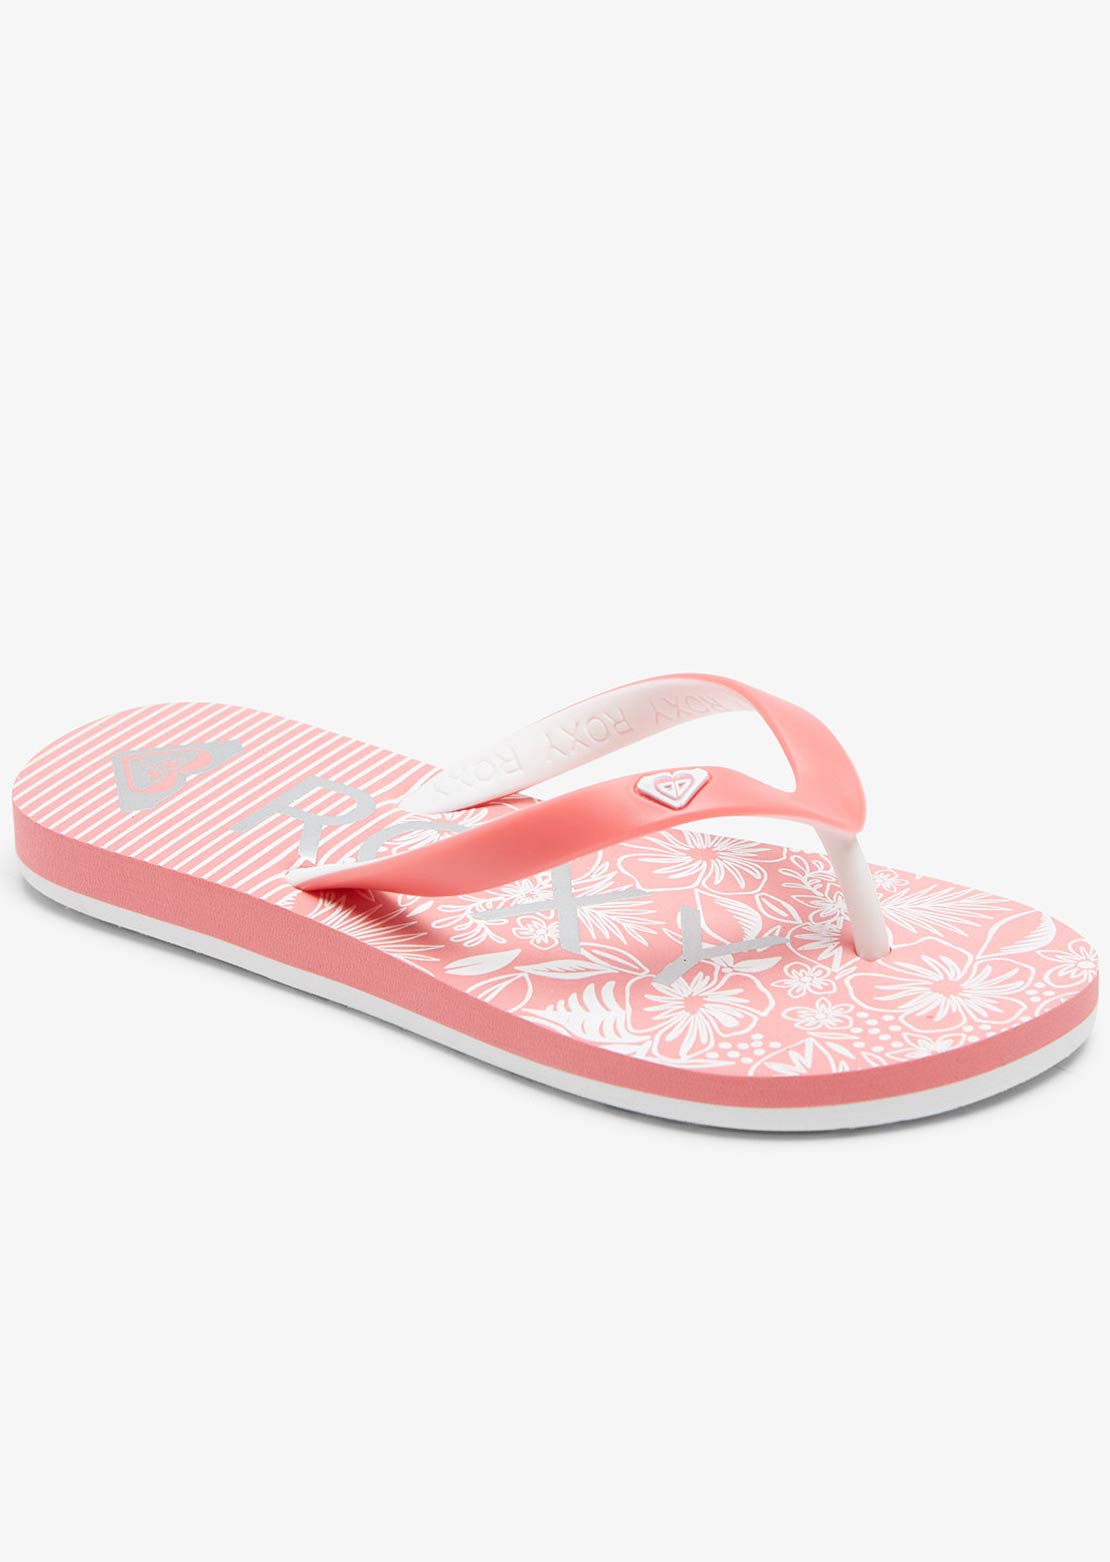 Roxy Junior RG Tahiti VII Sandals Red/White